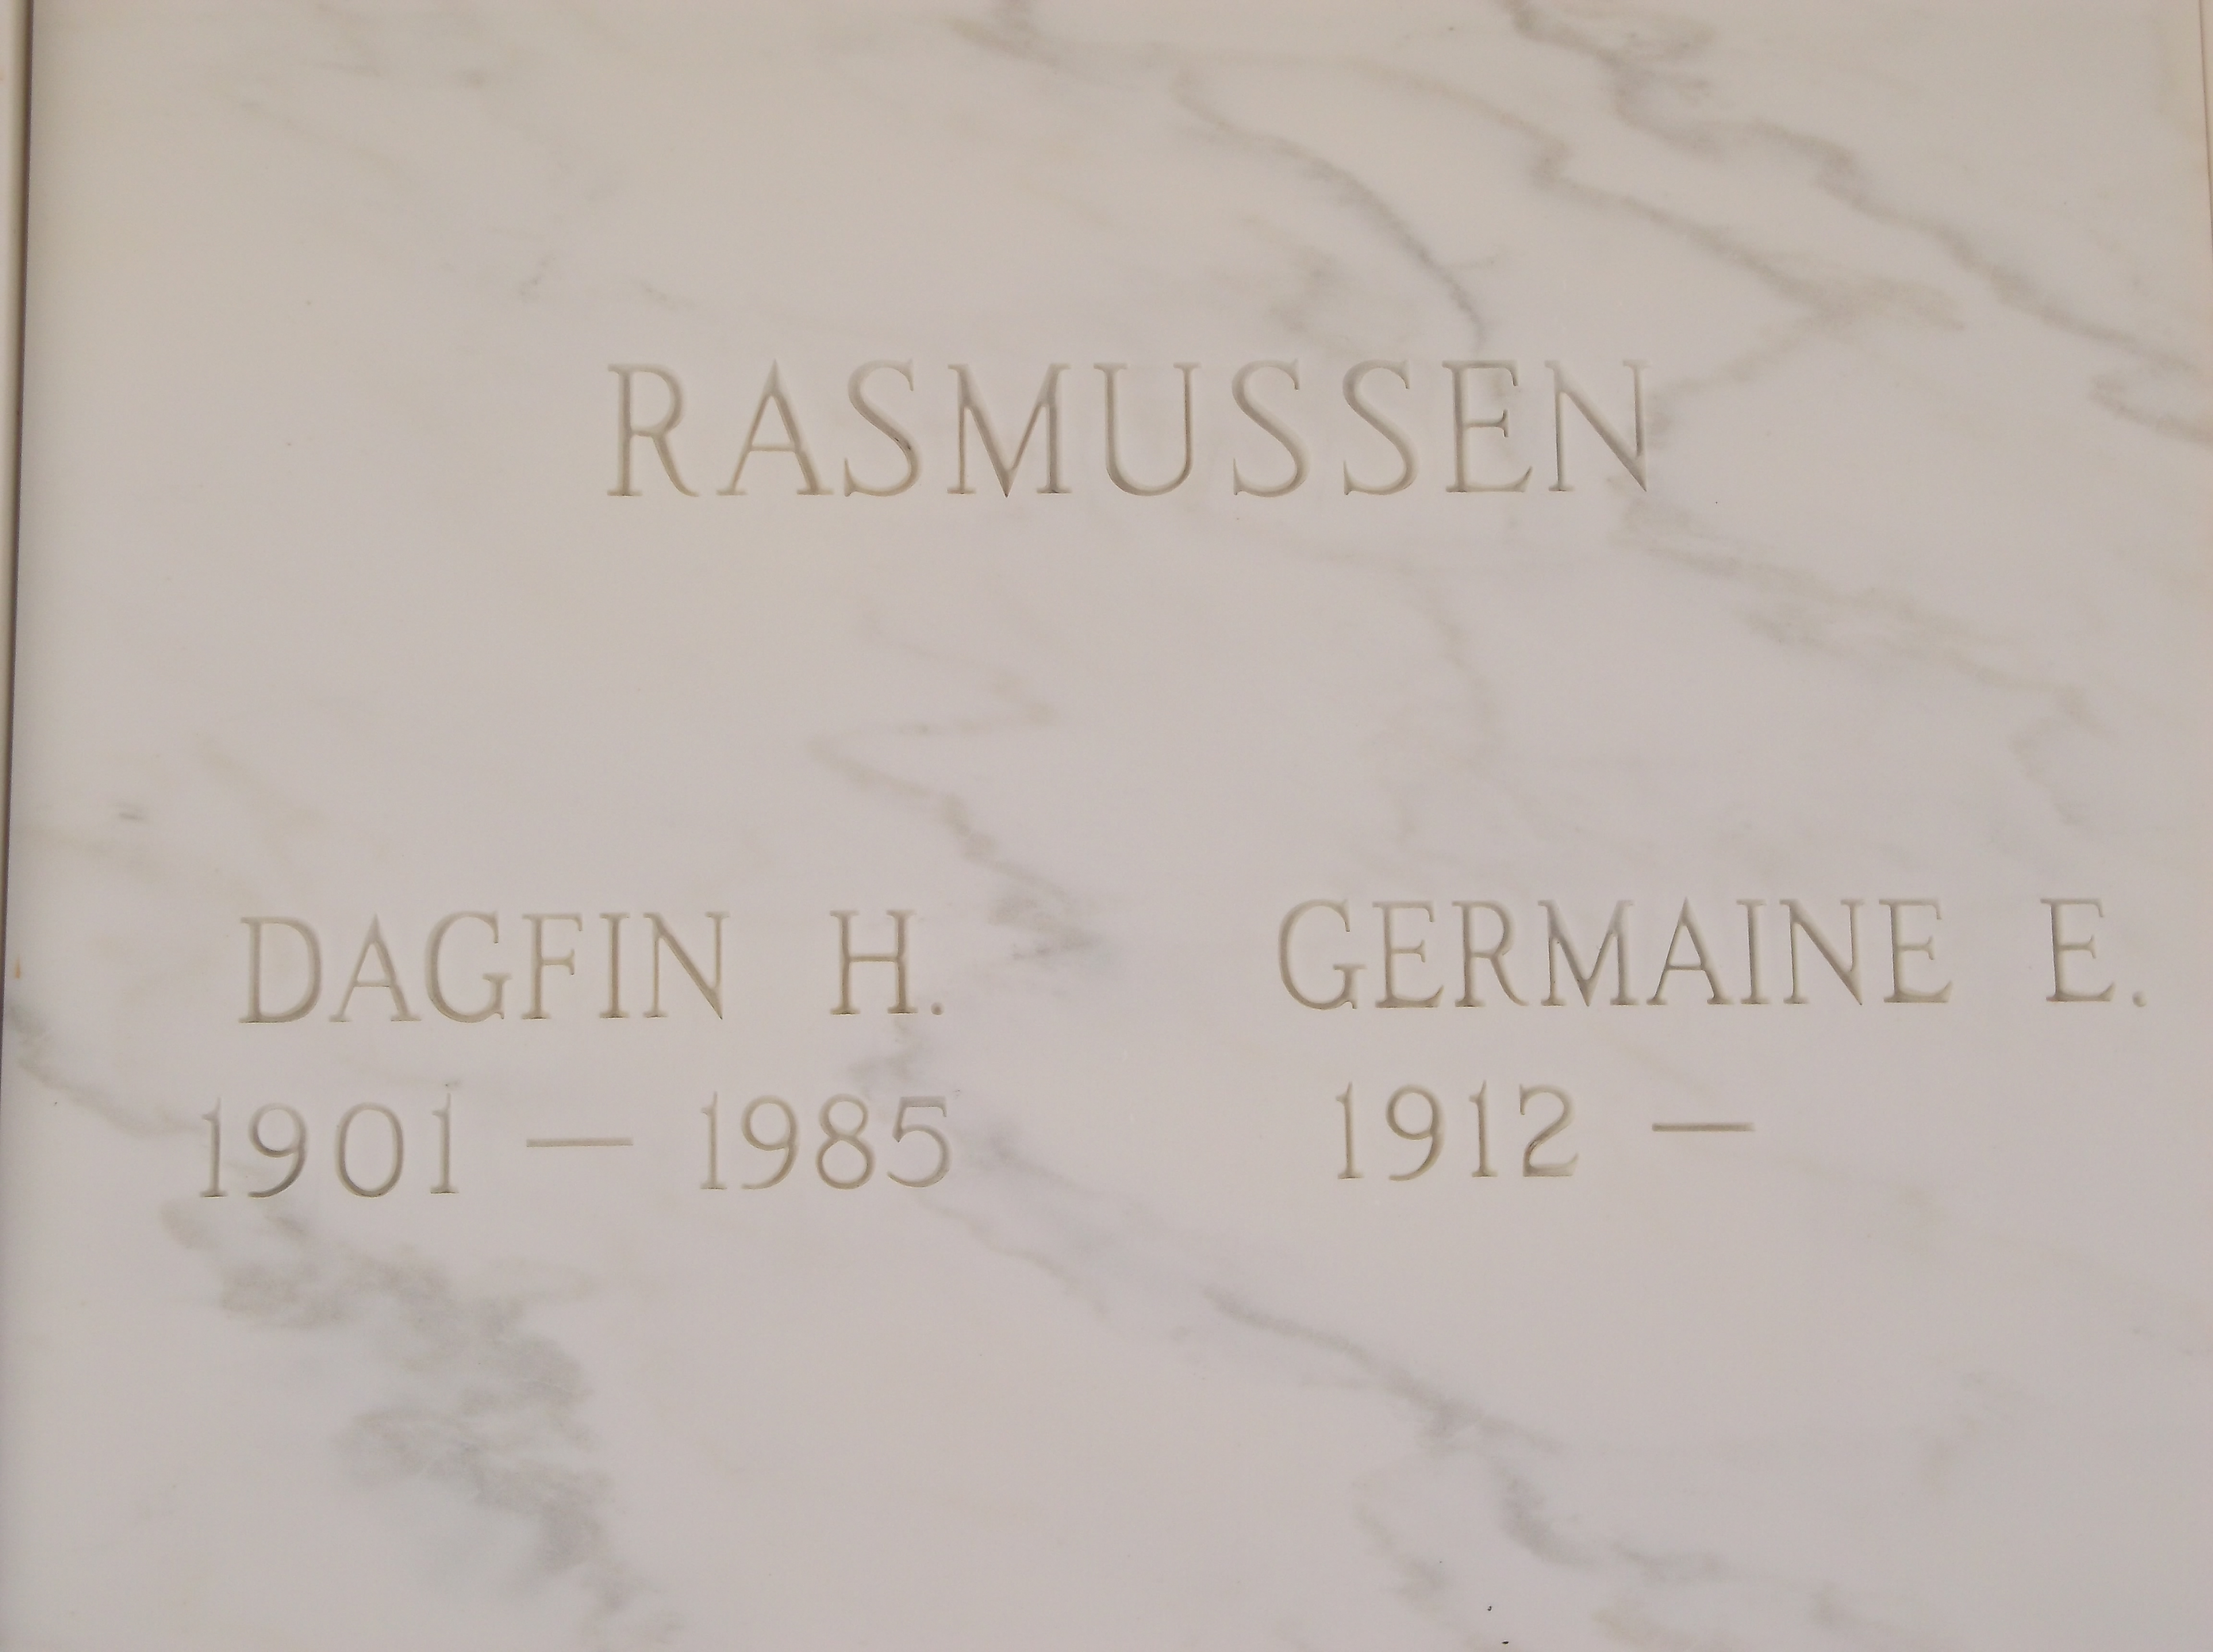 Dagfin H Rasmussen